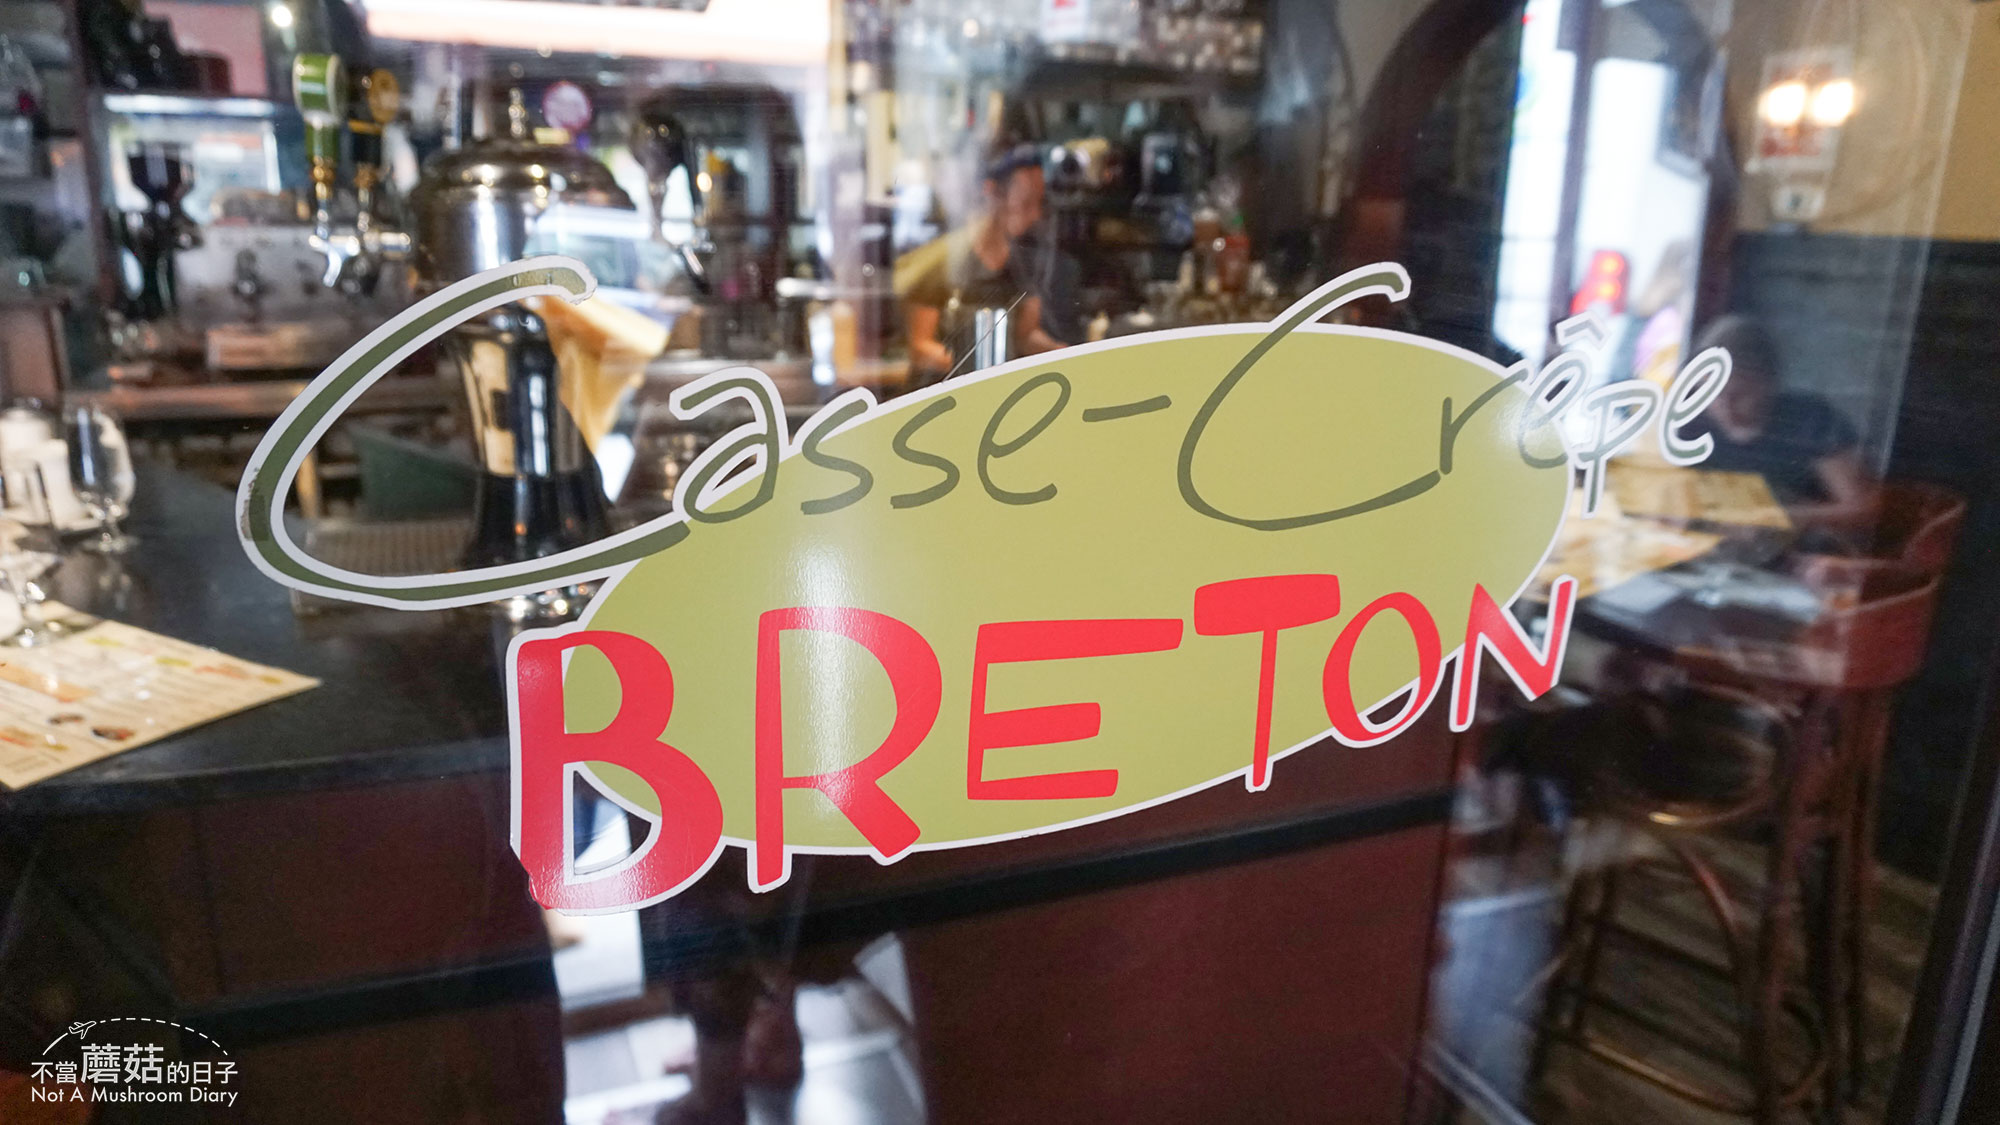 魁北克 加拿大 餐廳 必吃 可麗餅 Le Casse-Crepe Breton